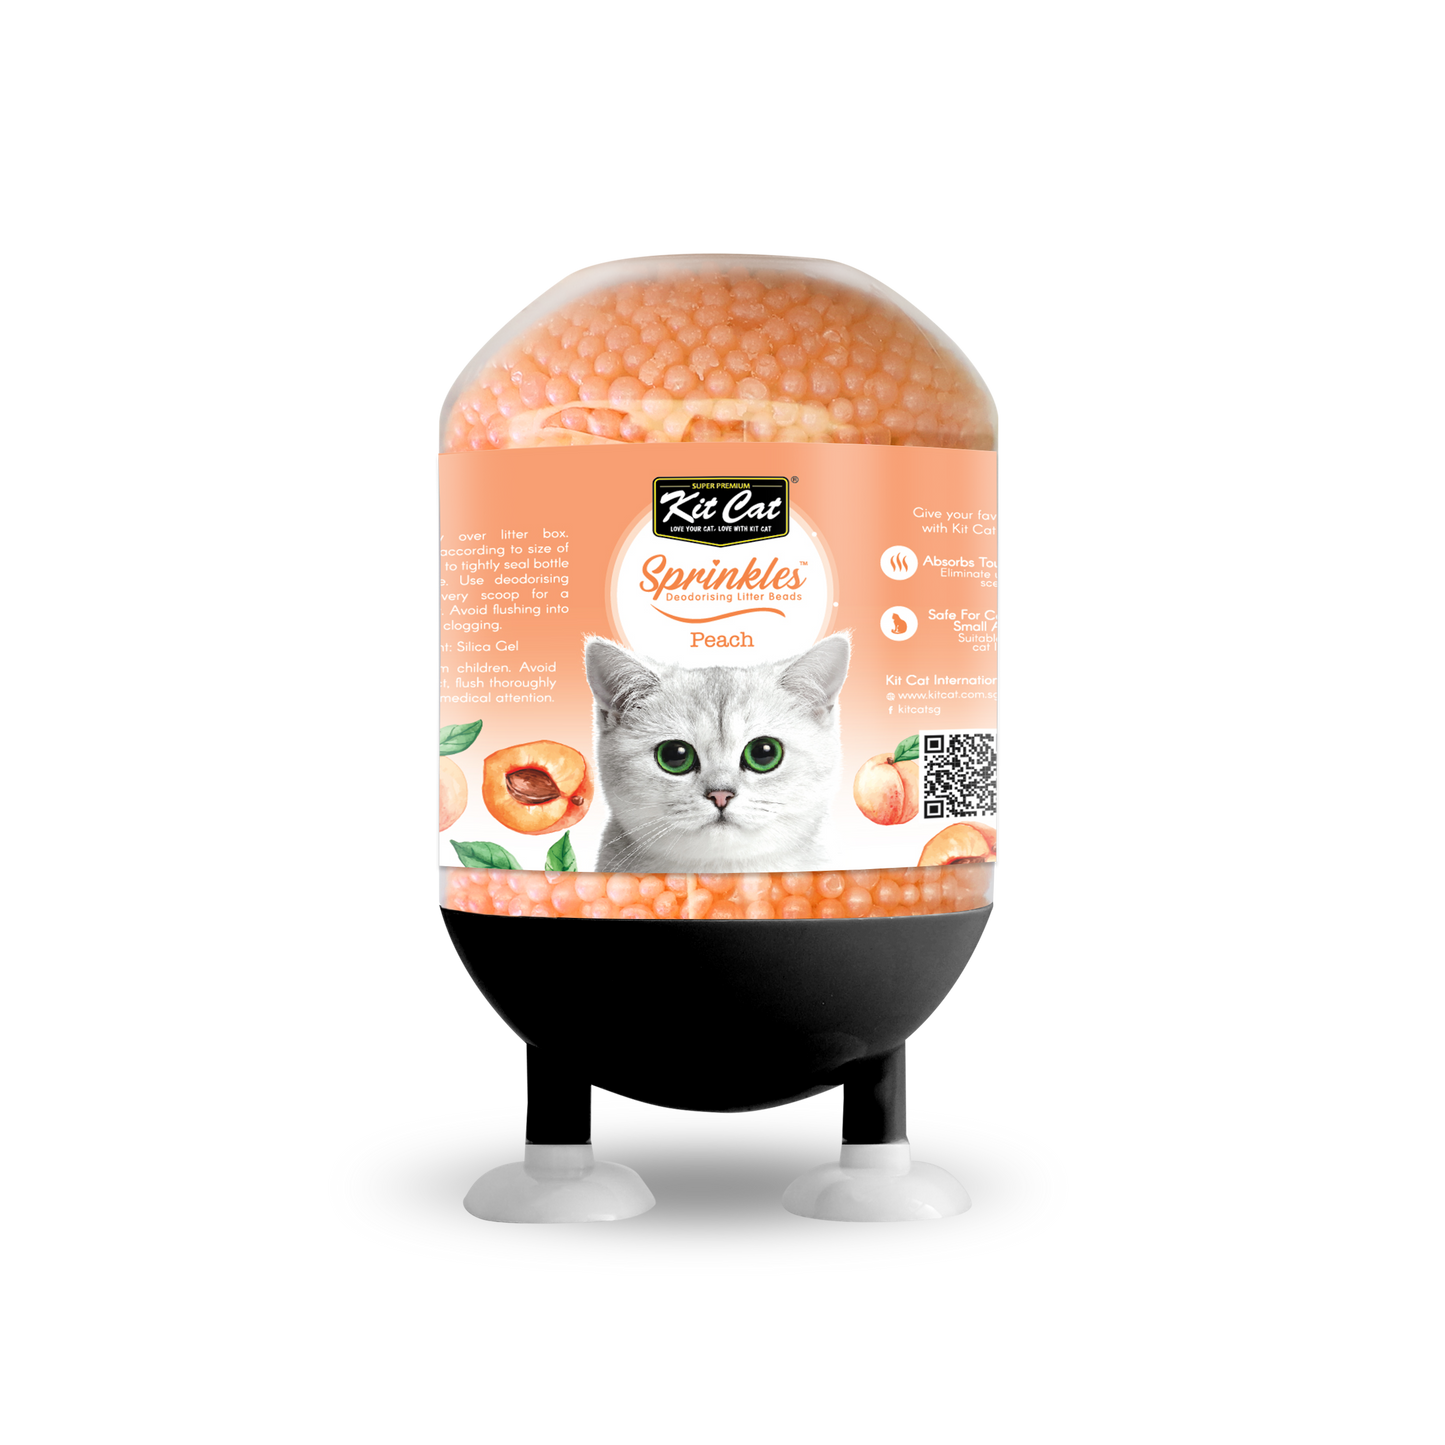 Kit Cat Sprinkles Peach Cat Litter Deodoriser 240g